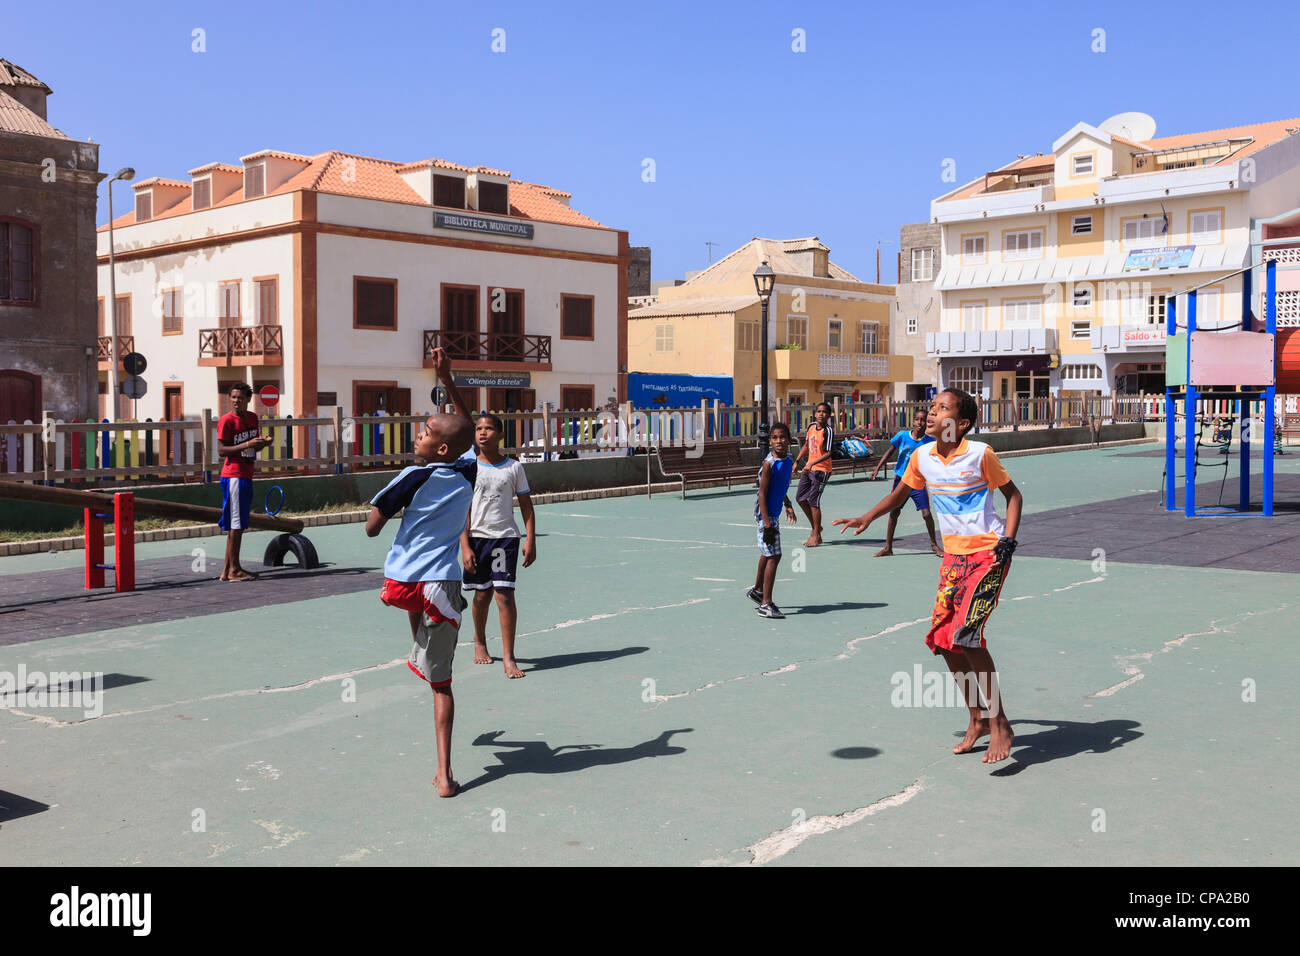 Lokalen Jungs spielen Fußball barfuß auf dem Kinderspielplatz auf dem Hauptplatz in Sal Rei, Boa Vista, Kap Verde Inseln Stockfoto